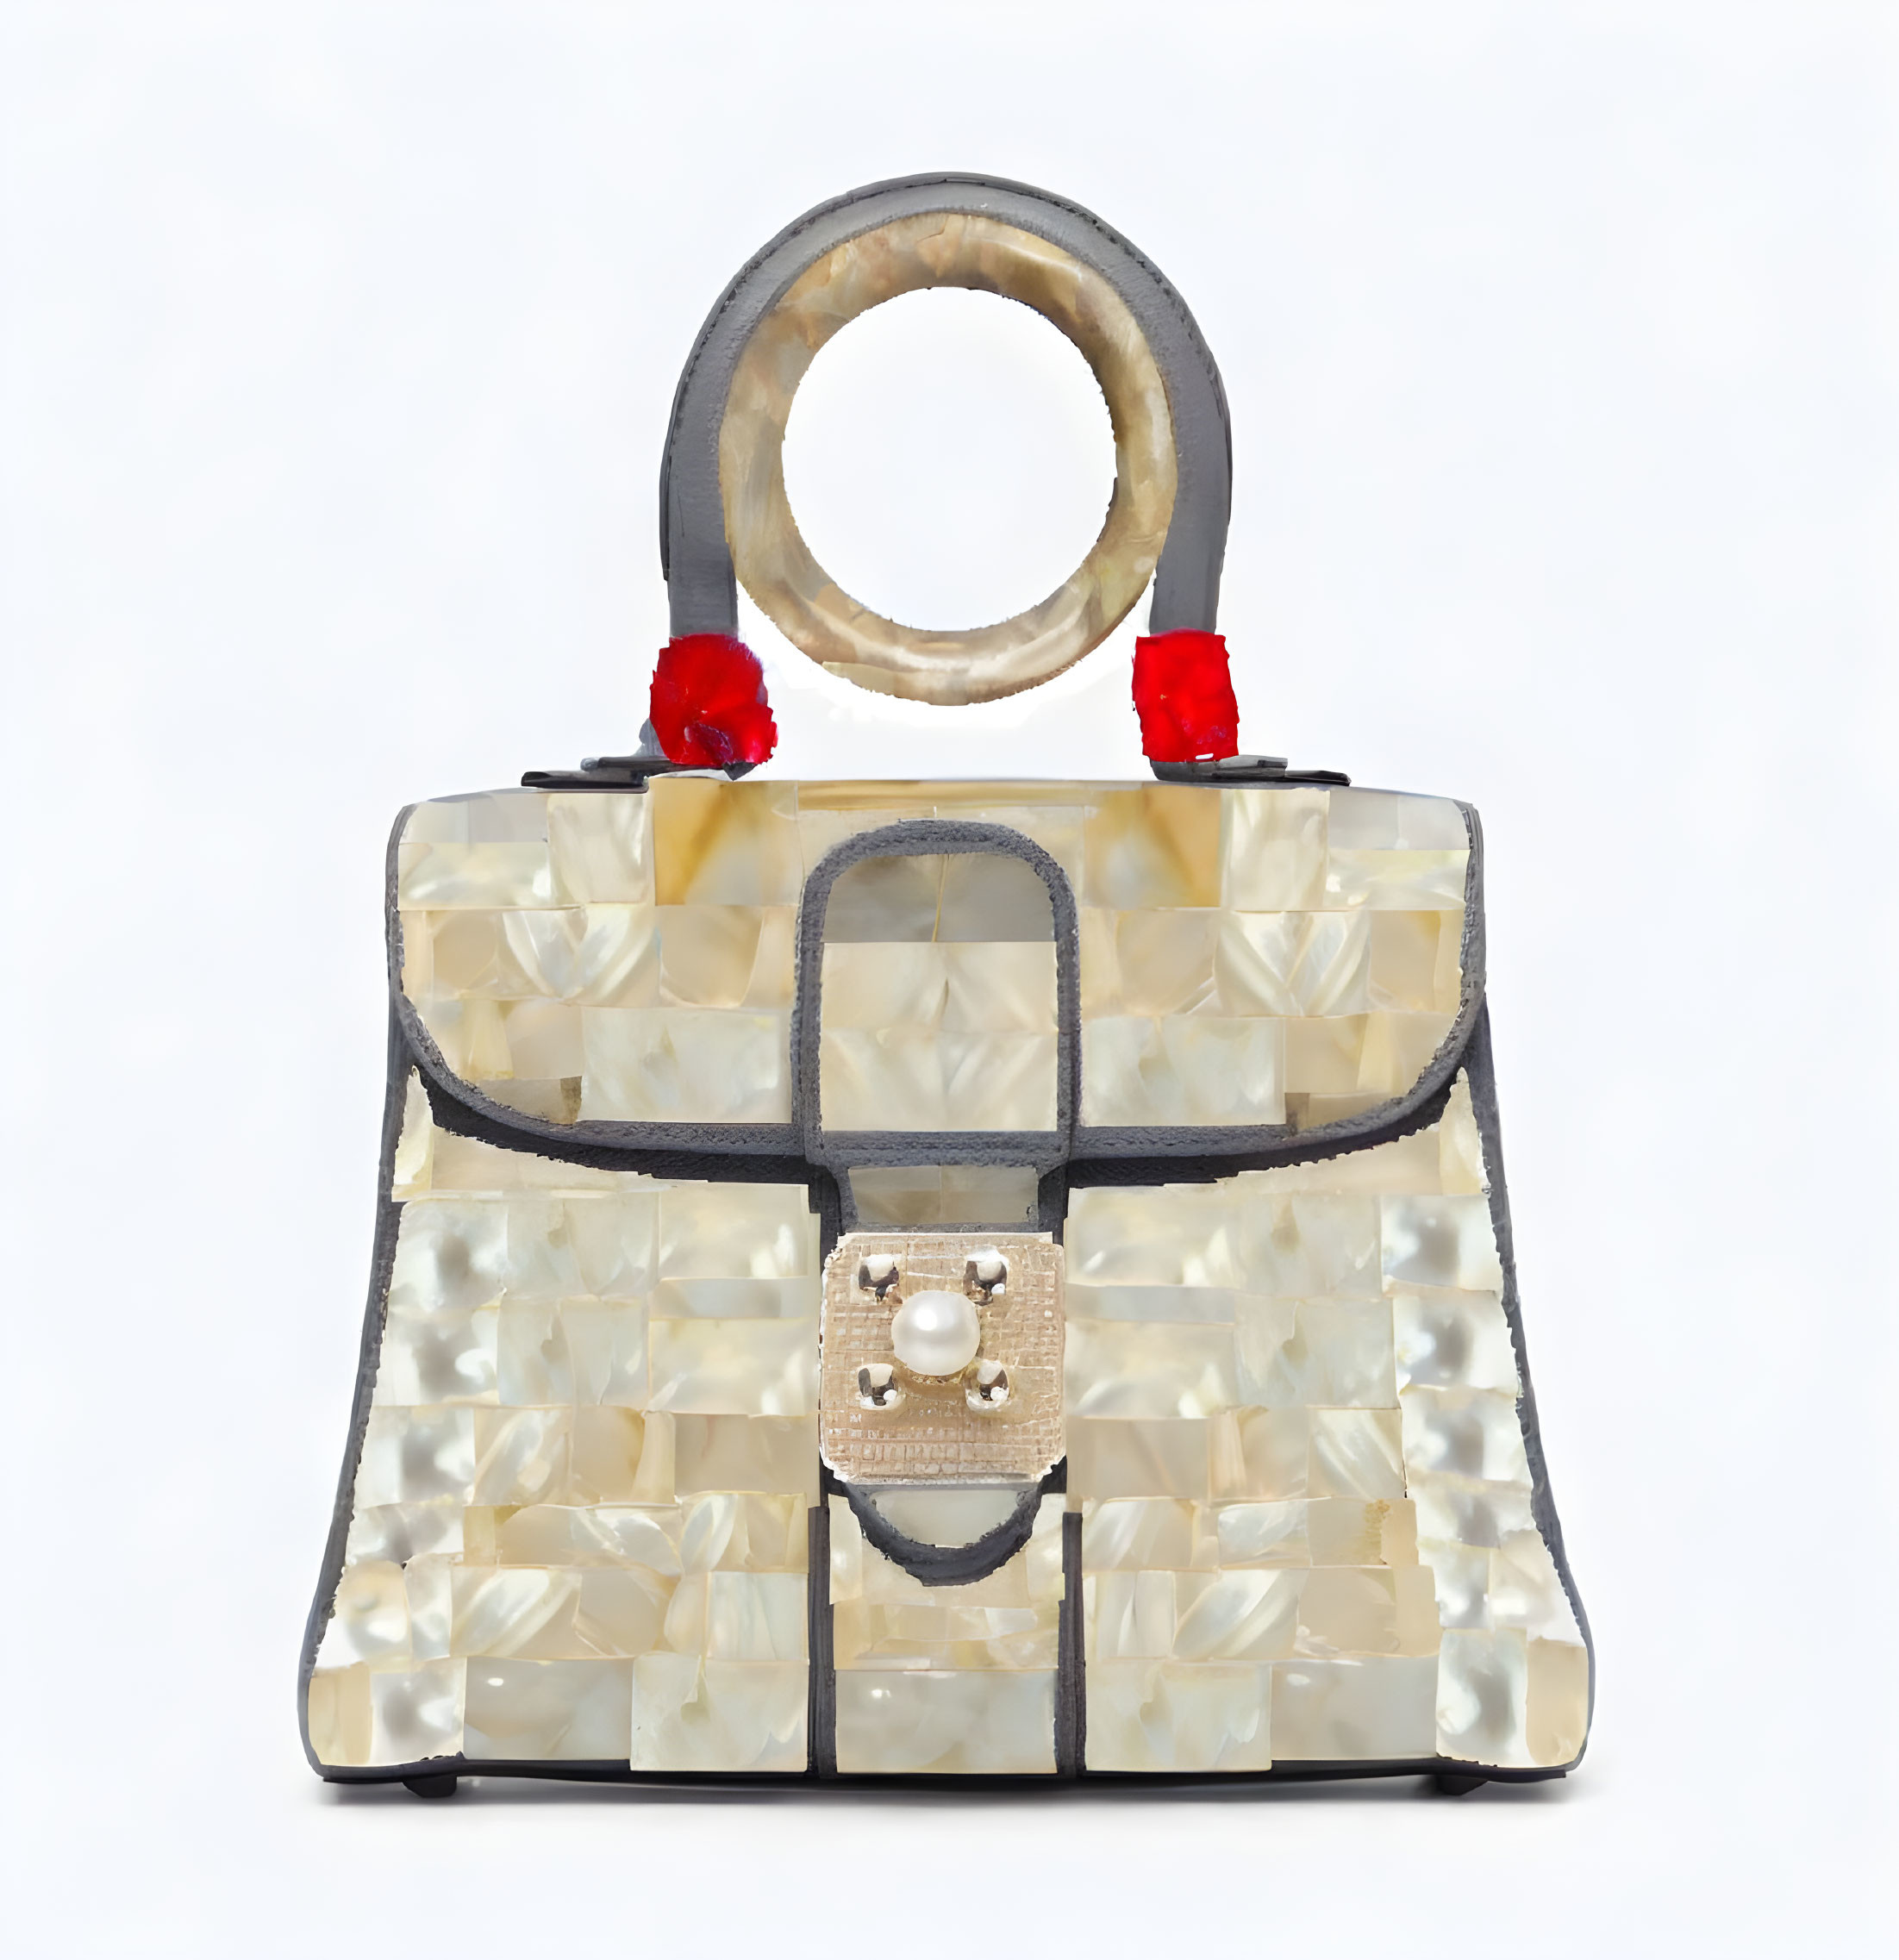 Pearl and coral handbag - variation 2